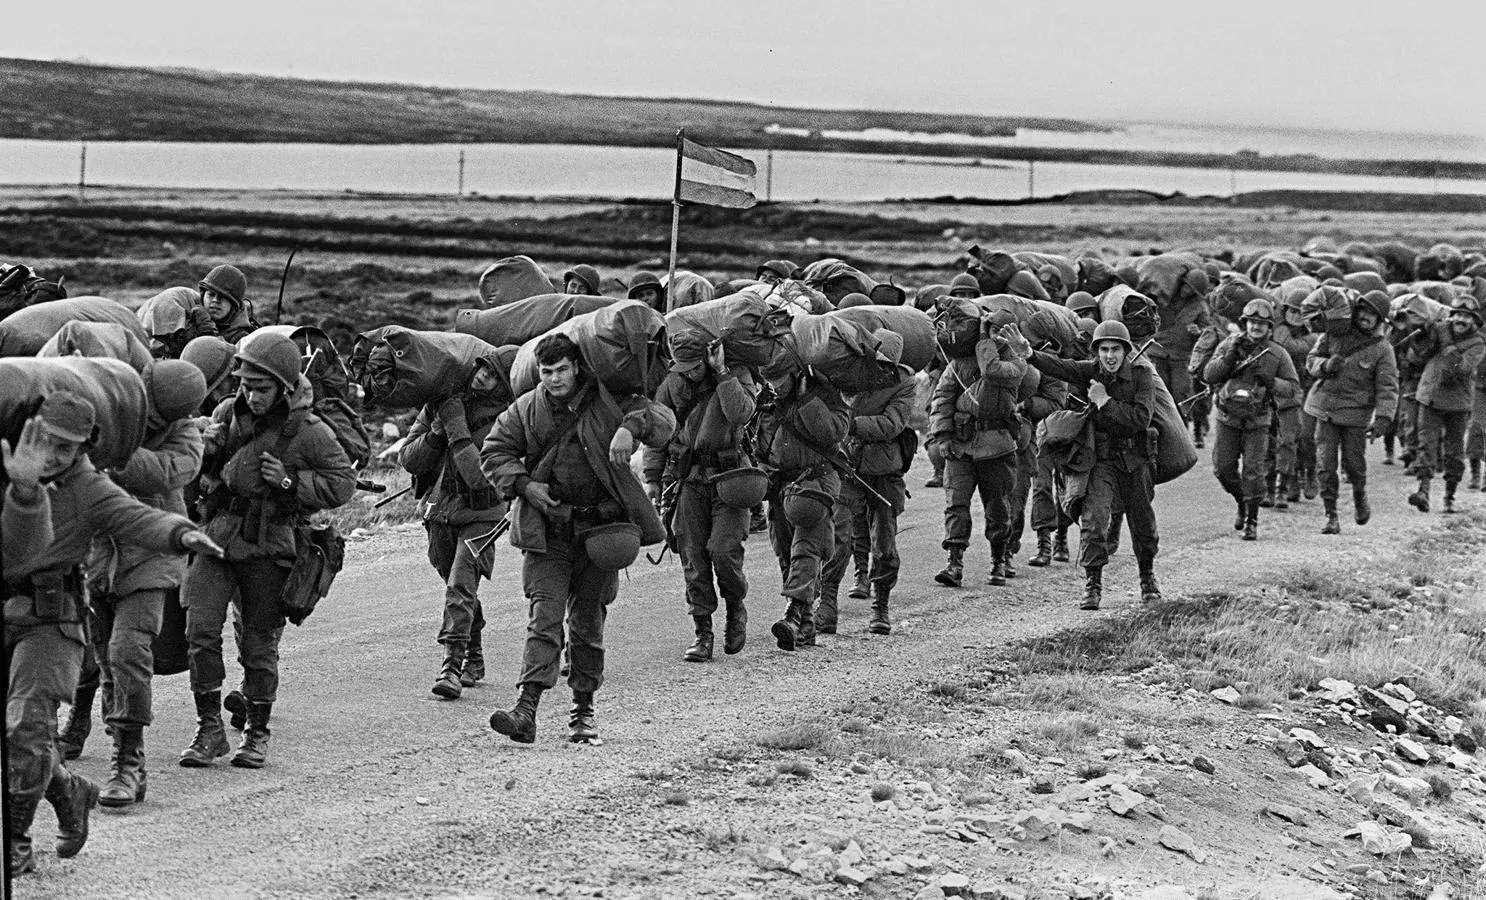 Soldados argentinos caminan el 13 de abril de 1982 para ocupar la base de los Marines Reales capturados en Puerto Argentino/Stanley, unos días después de que la dictadura militar argentina se apoderase de las islas Malvinas, comenzando una guerra entre Argentina y Reino Unido.. 